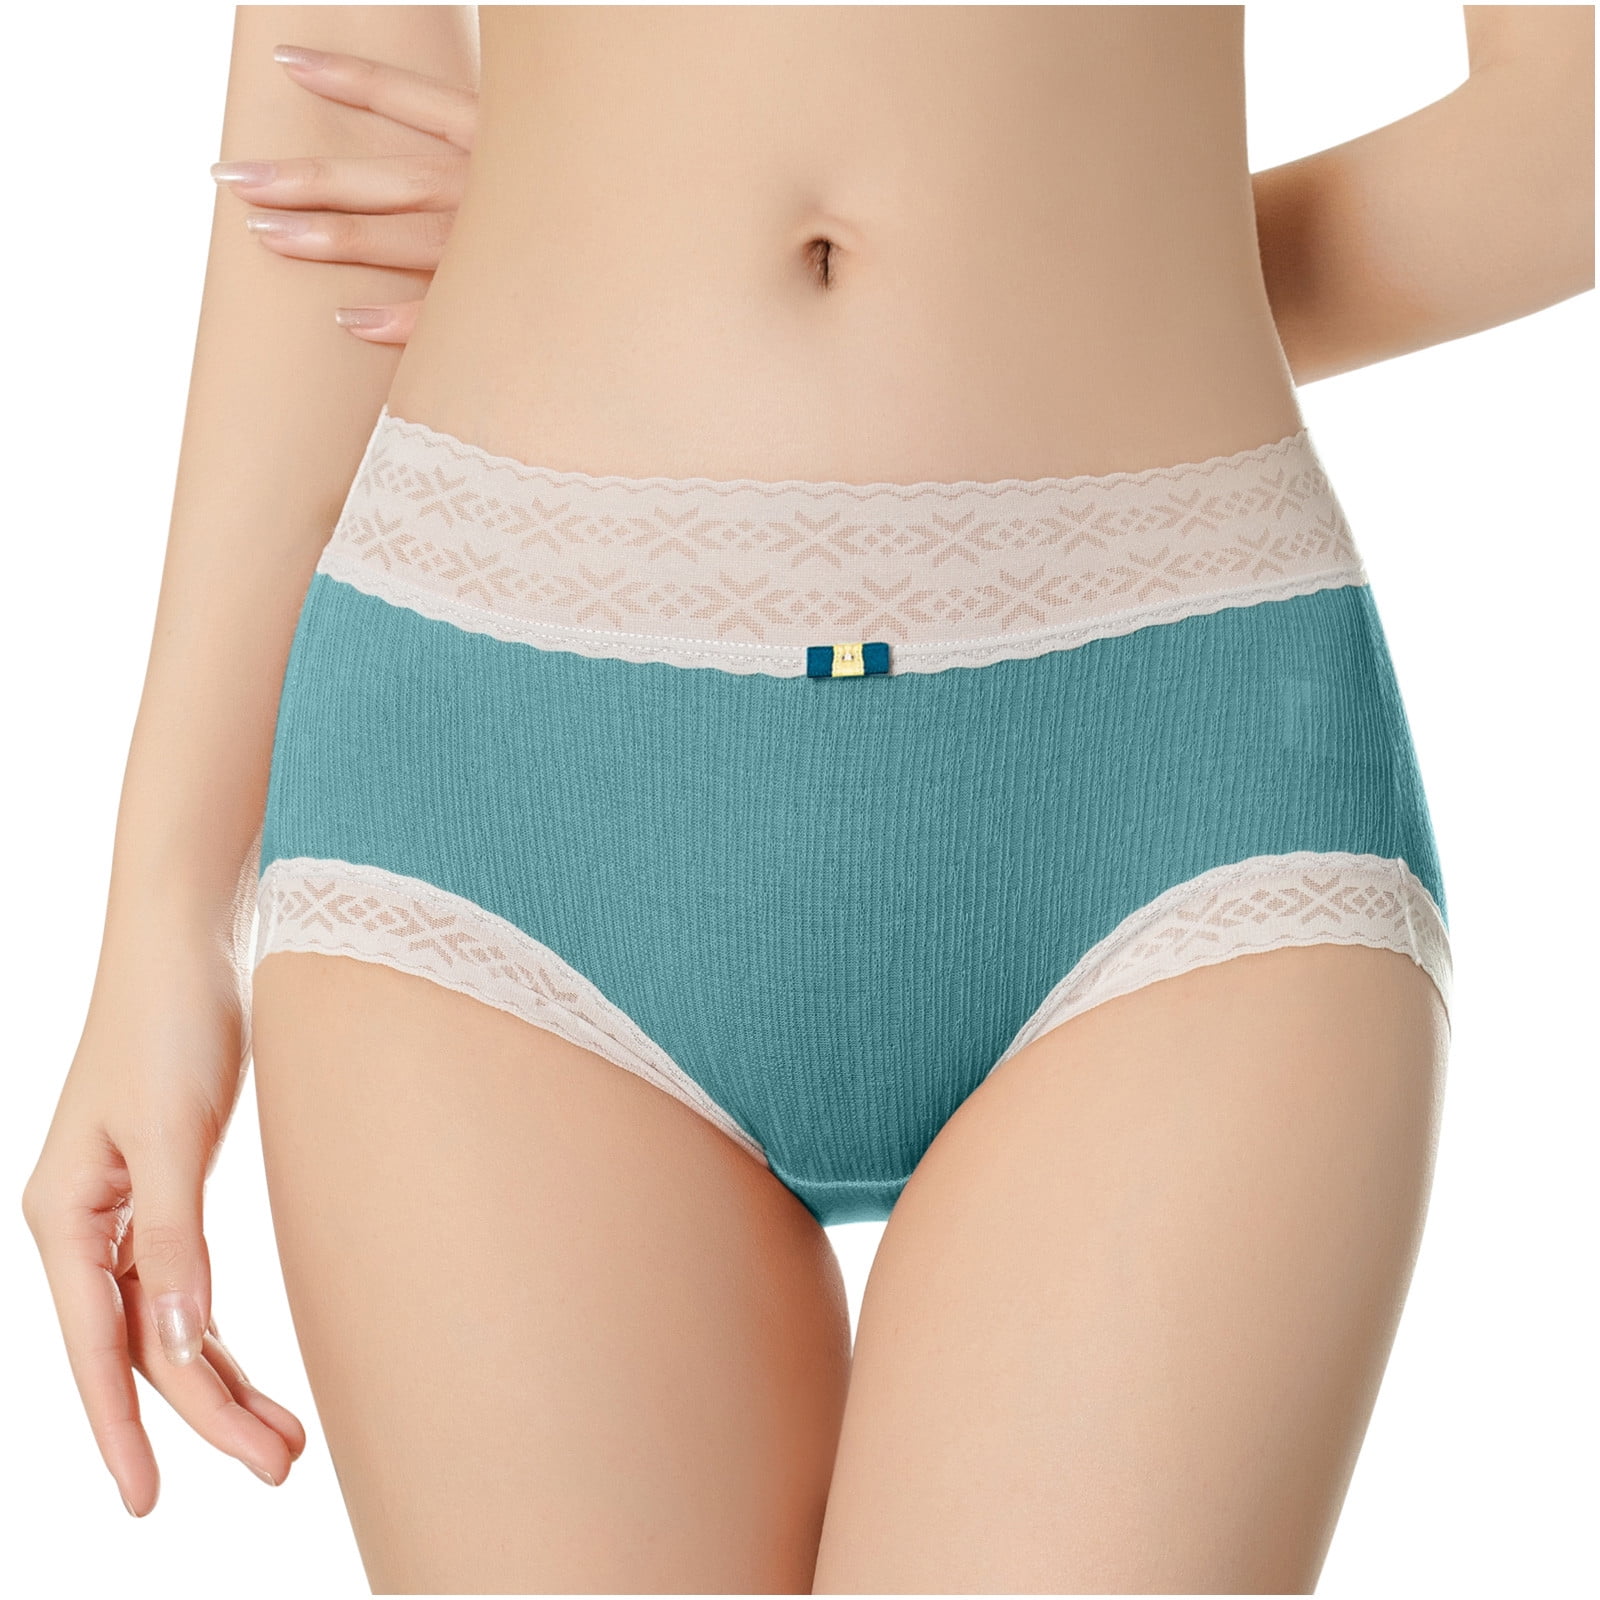 Mrat Seamless Lingerie Briefs Underwear for Women Mid-waist Cotton